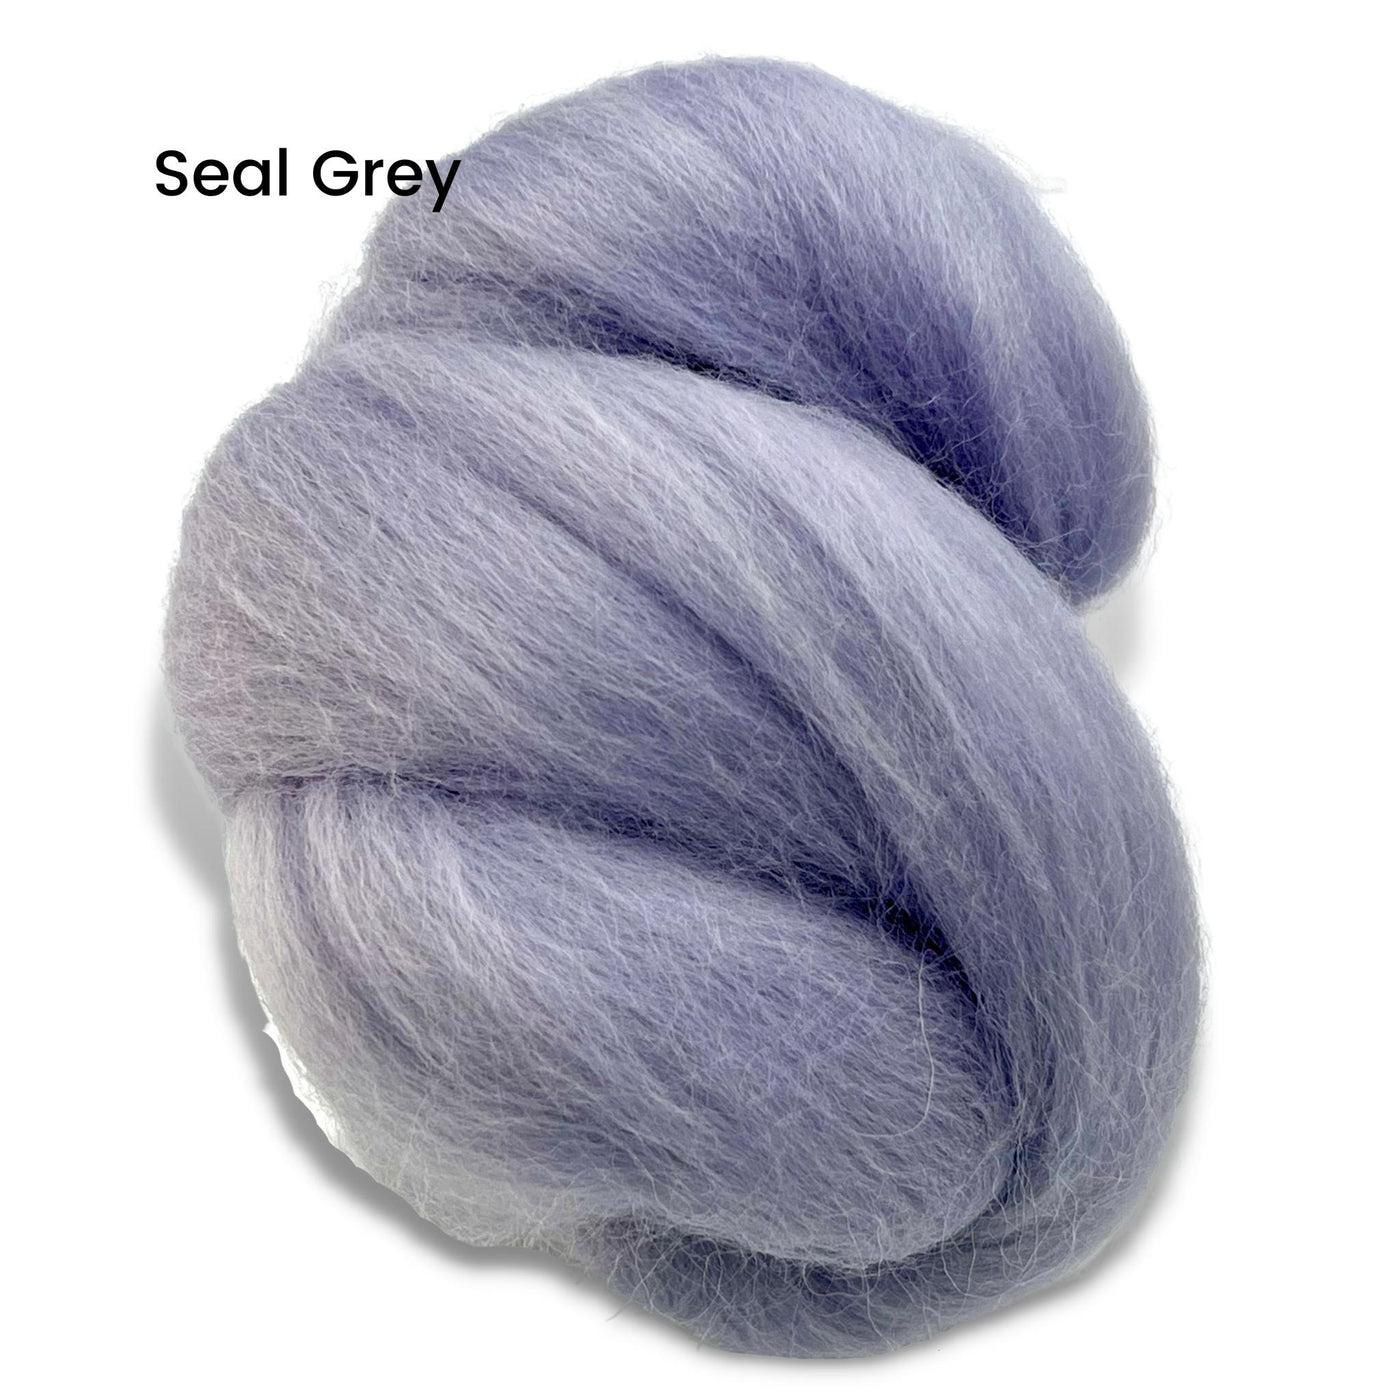 Seal Grey Corriedale Wool Roving Top